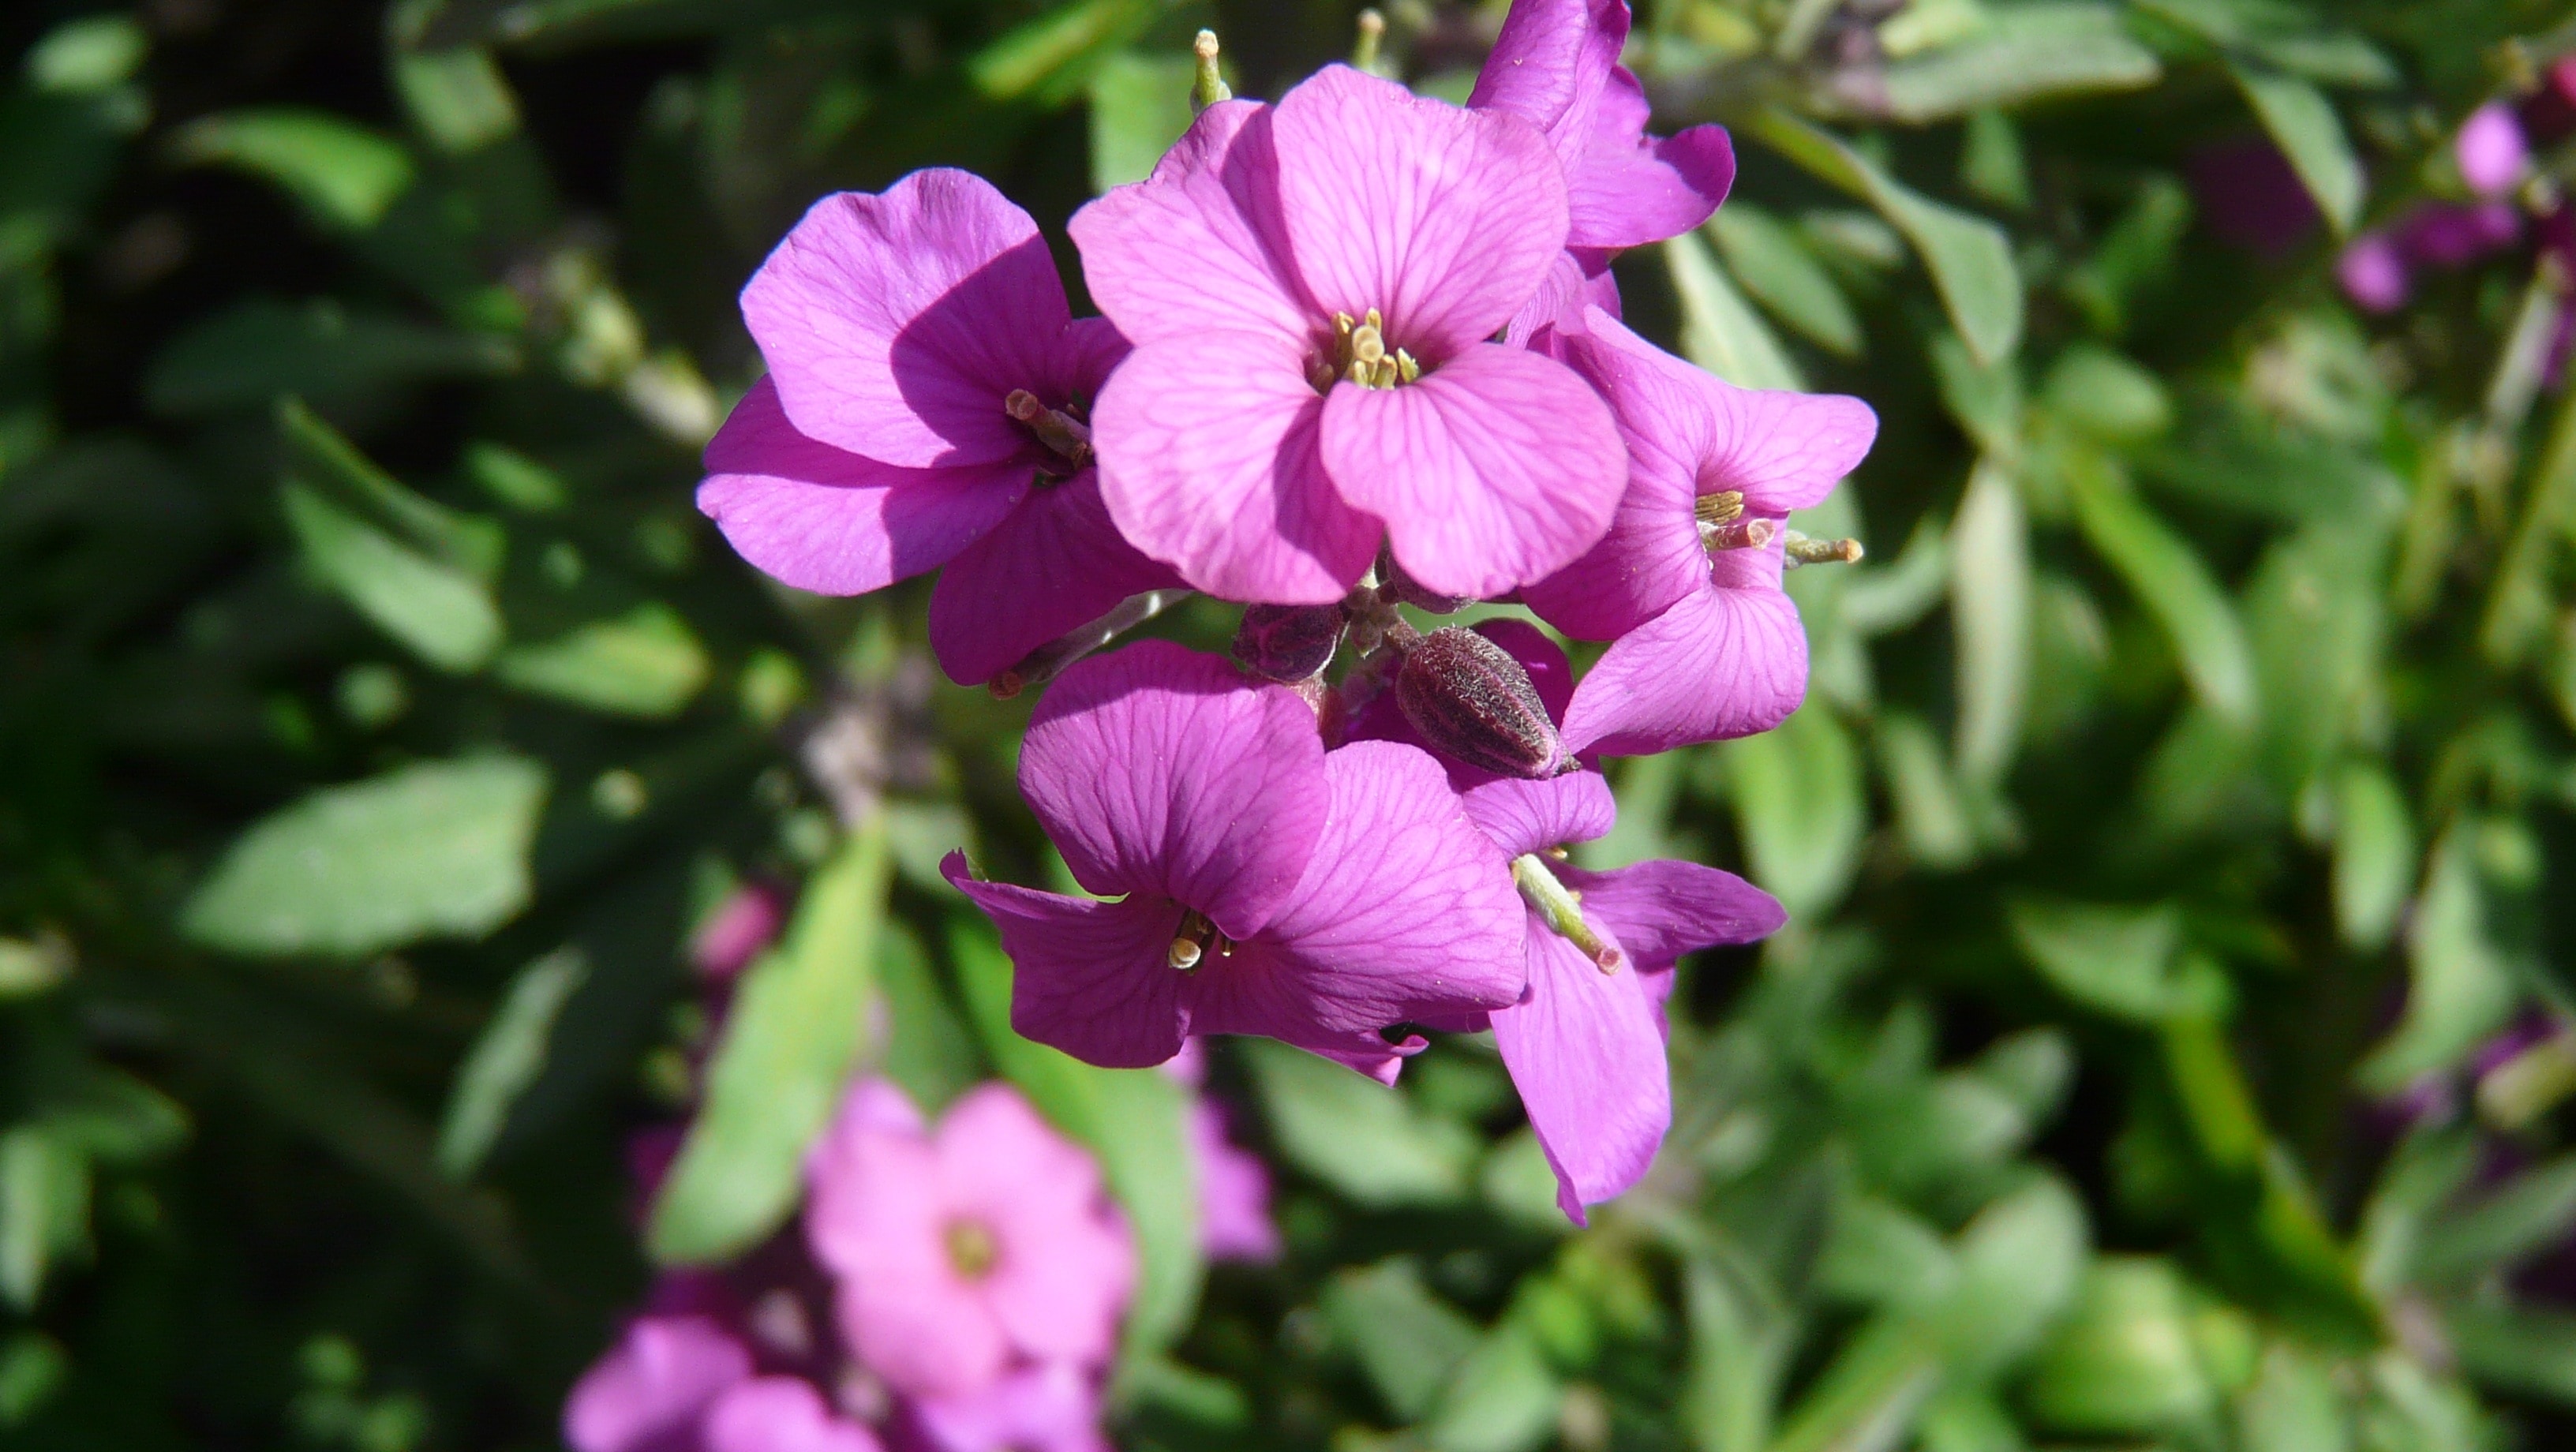 purple flower during daytime